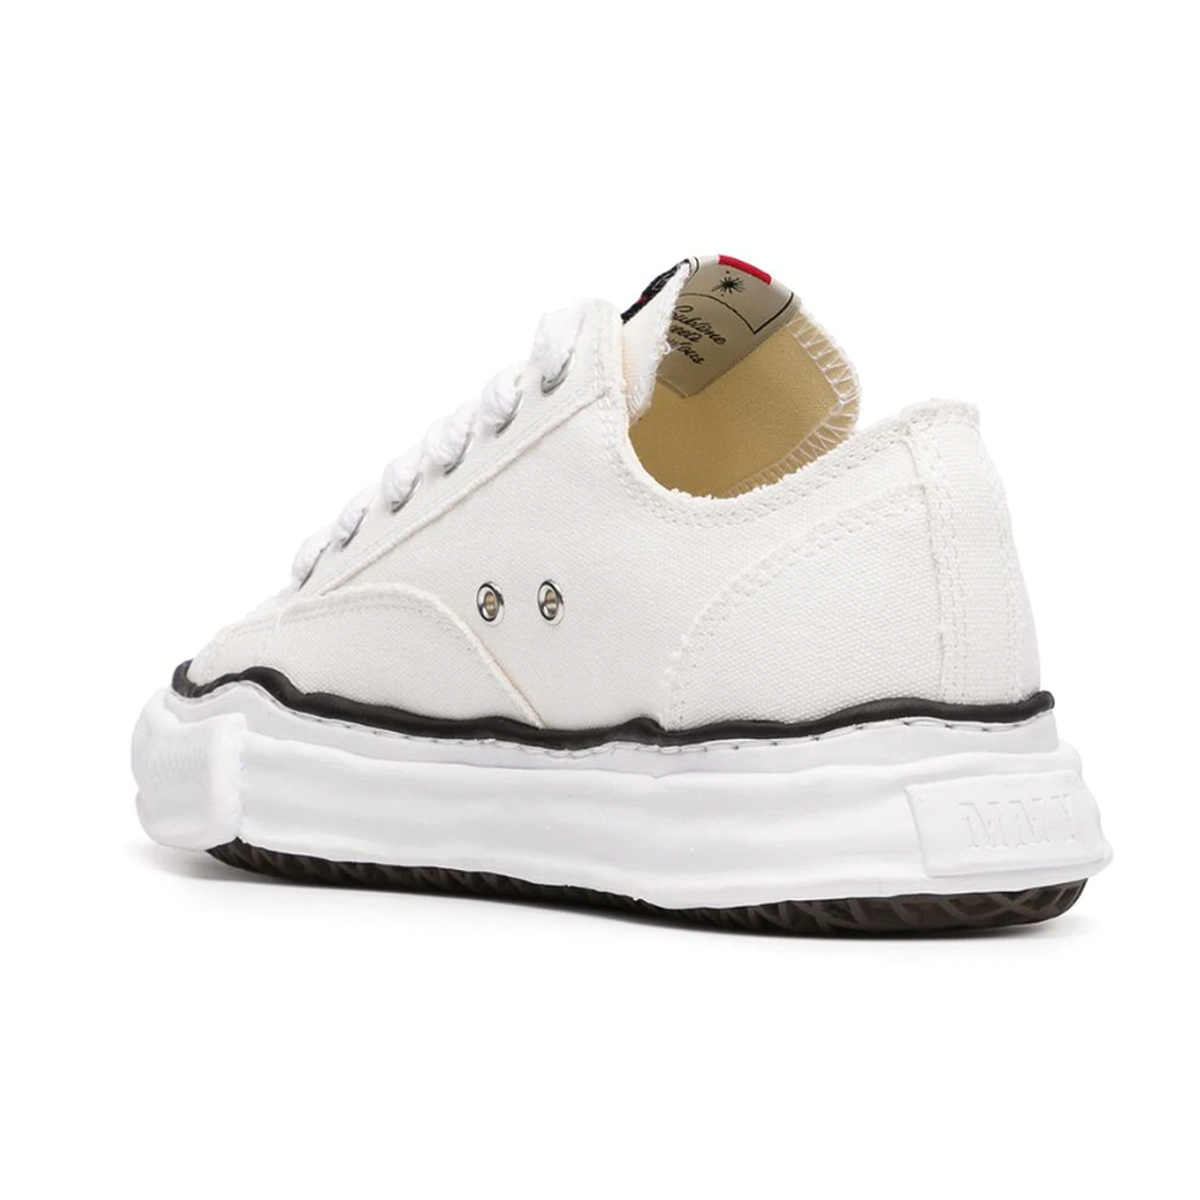 Maison Mihara Yasuhiro "Peterson" White Sneakers